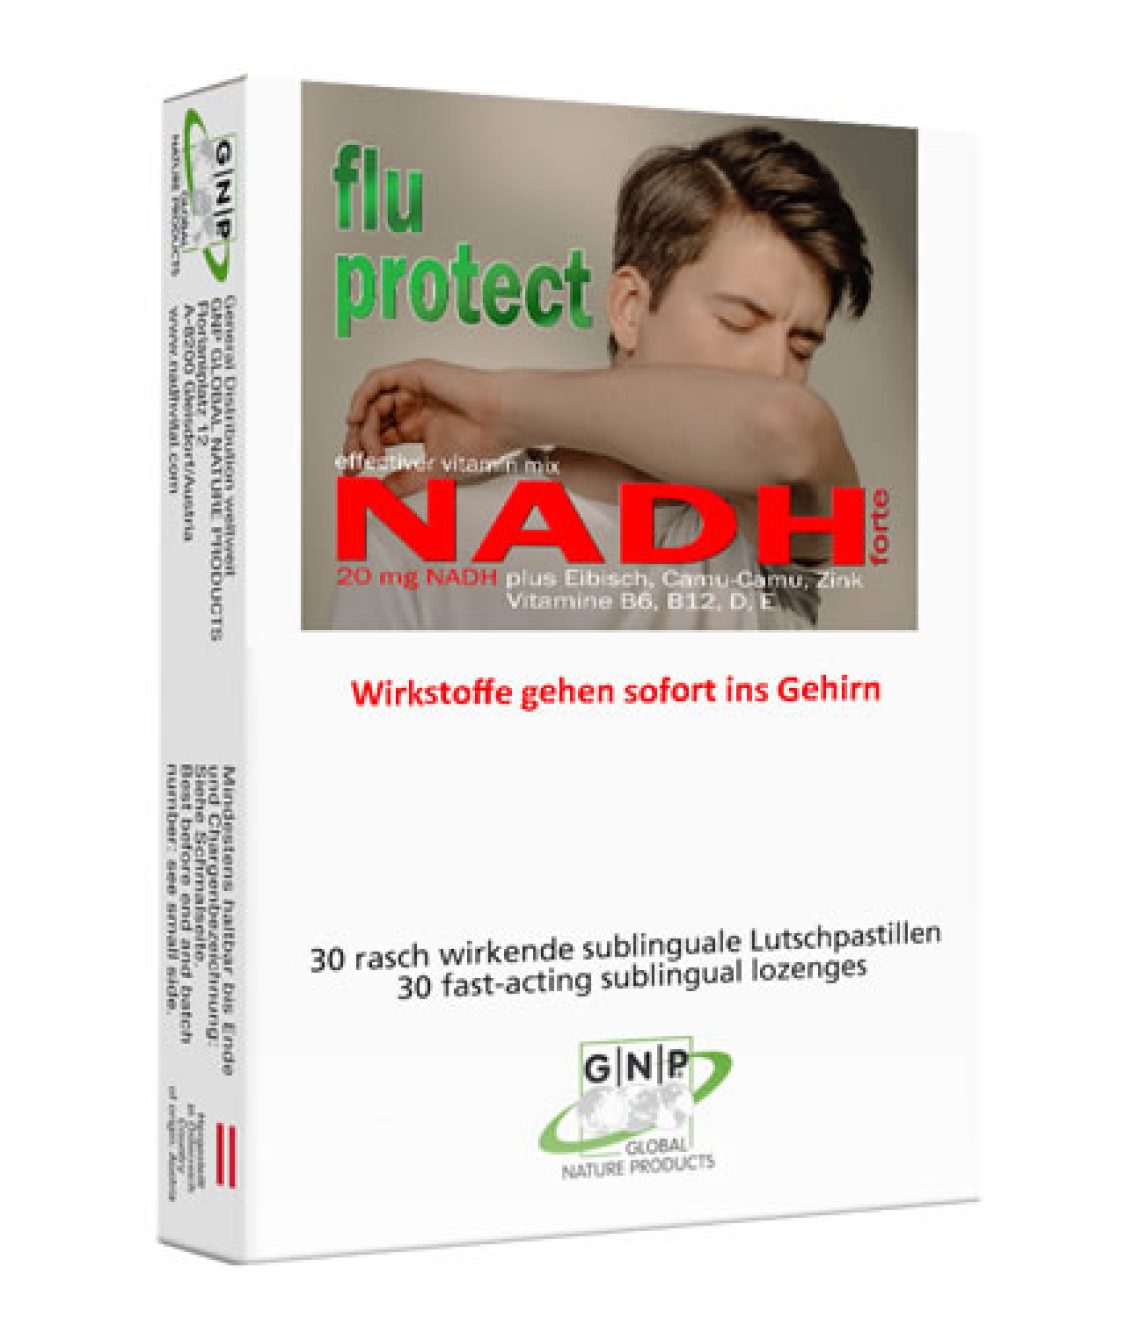 NADH-flu-protect.jpg